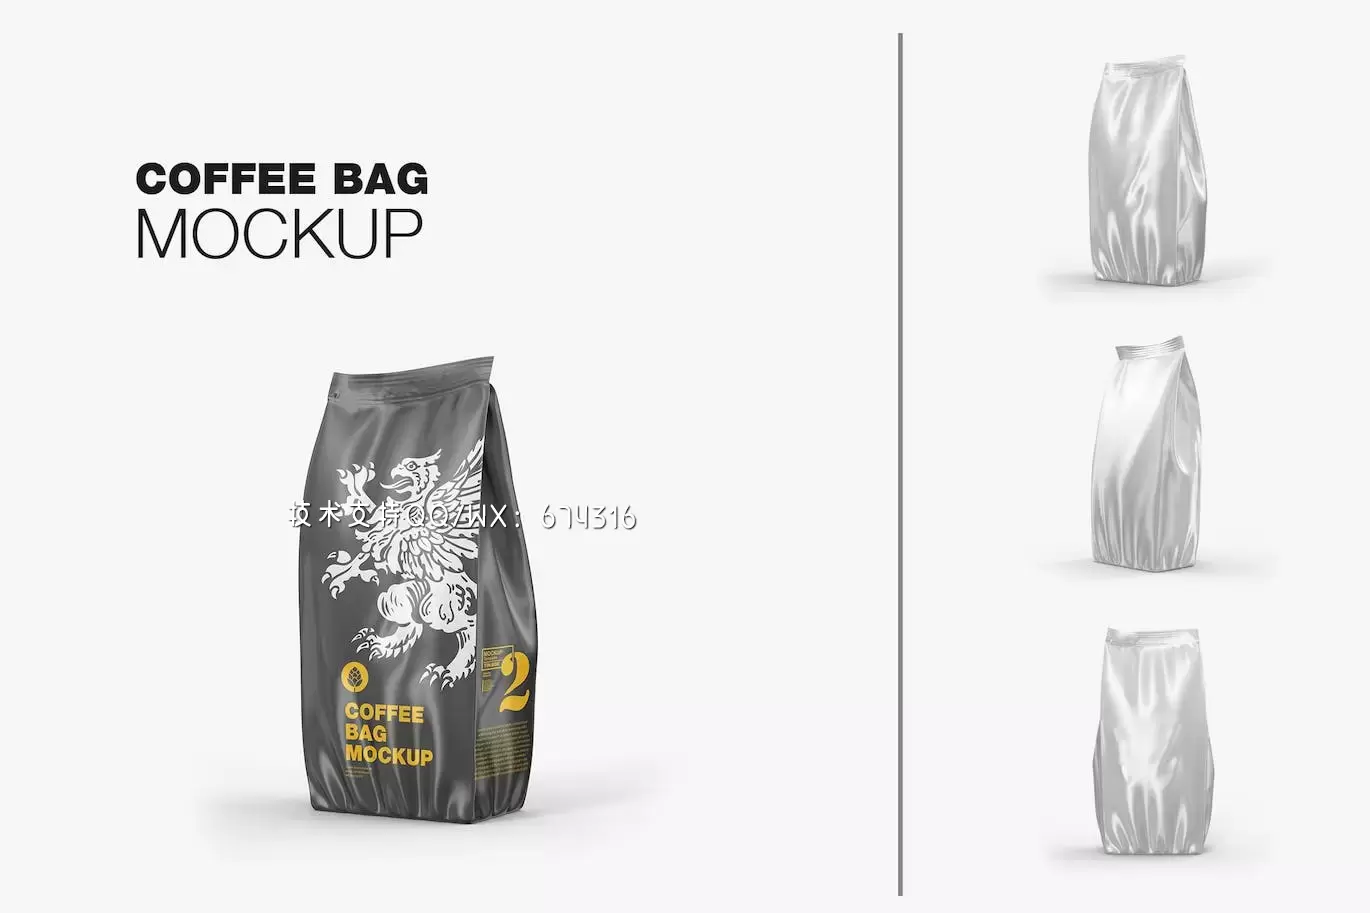 塑料食品/零食袋包装设计样机 (PSD)免费下载